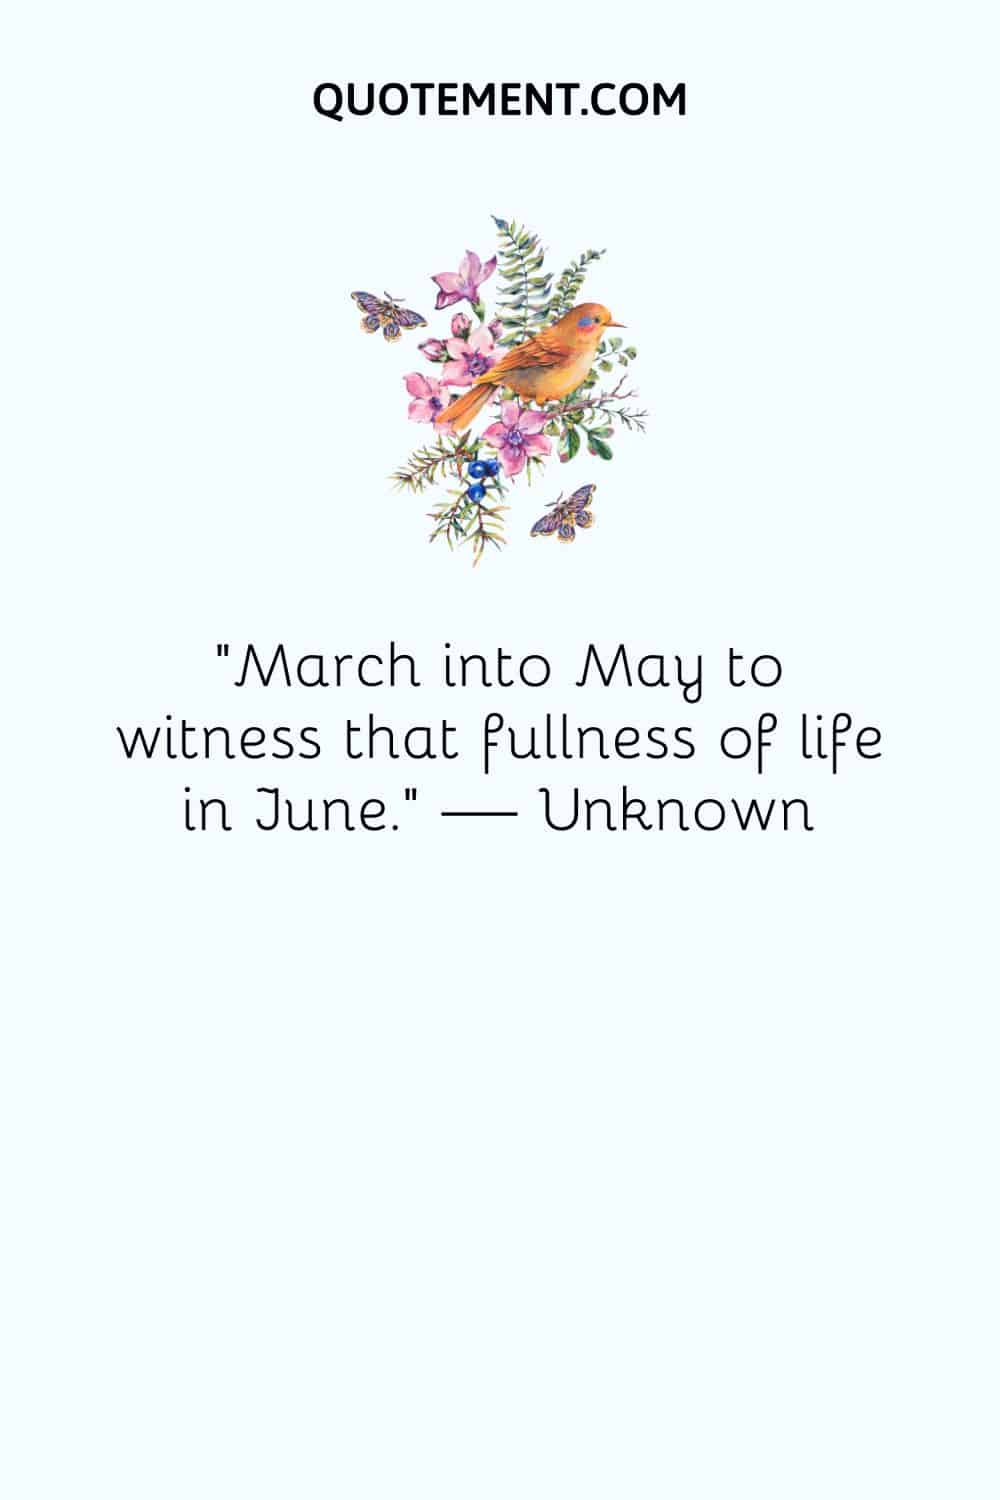 "Marcha en mayo para presenciar la plenitud de la vida en junio". - Desconocido